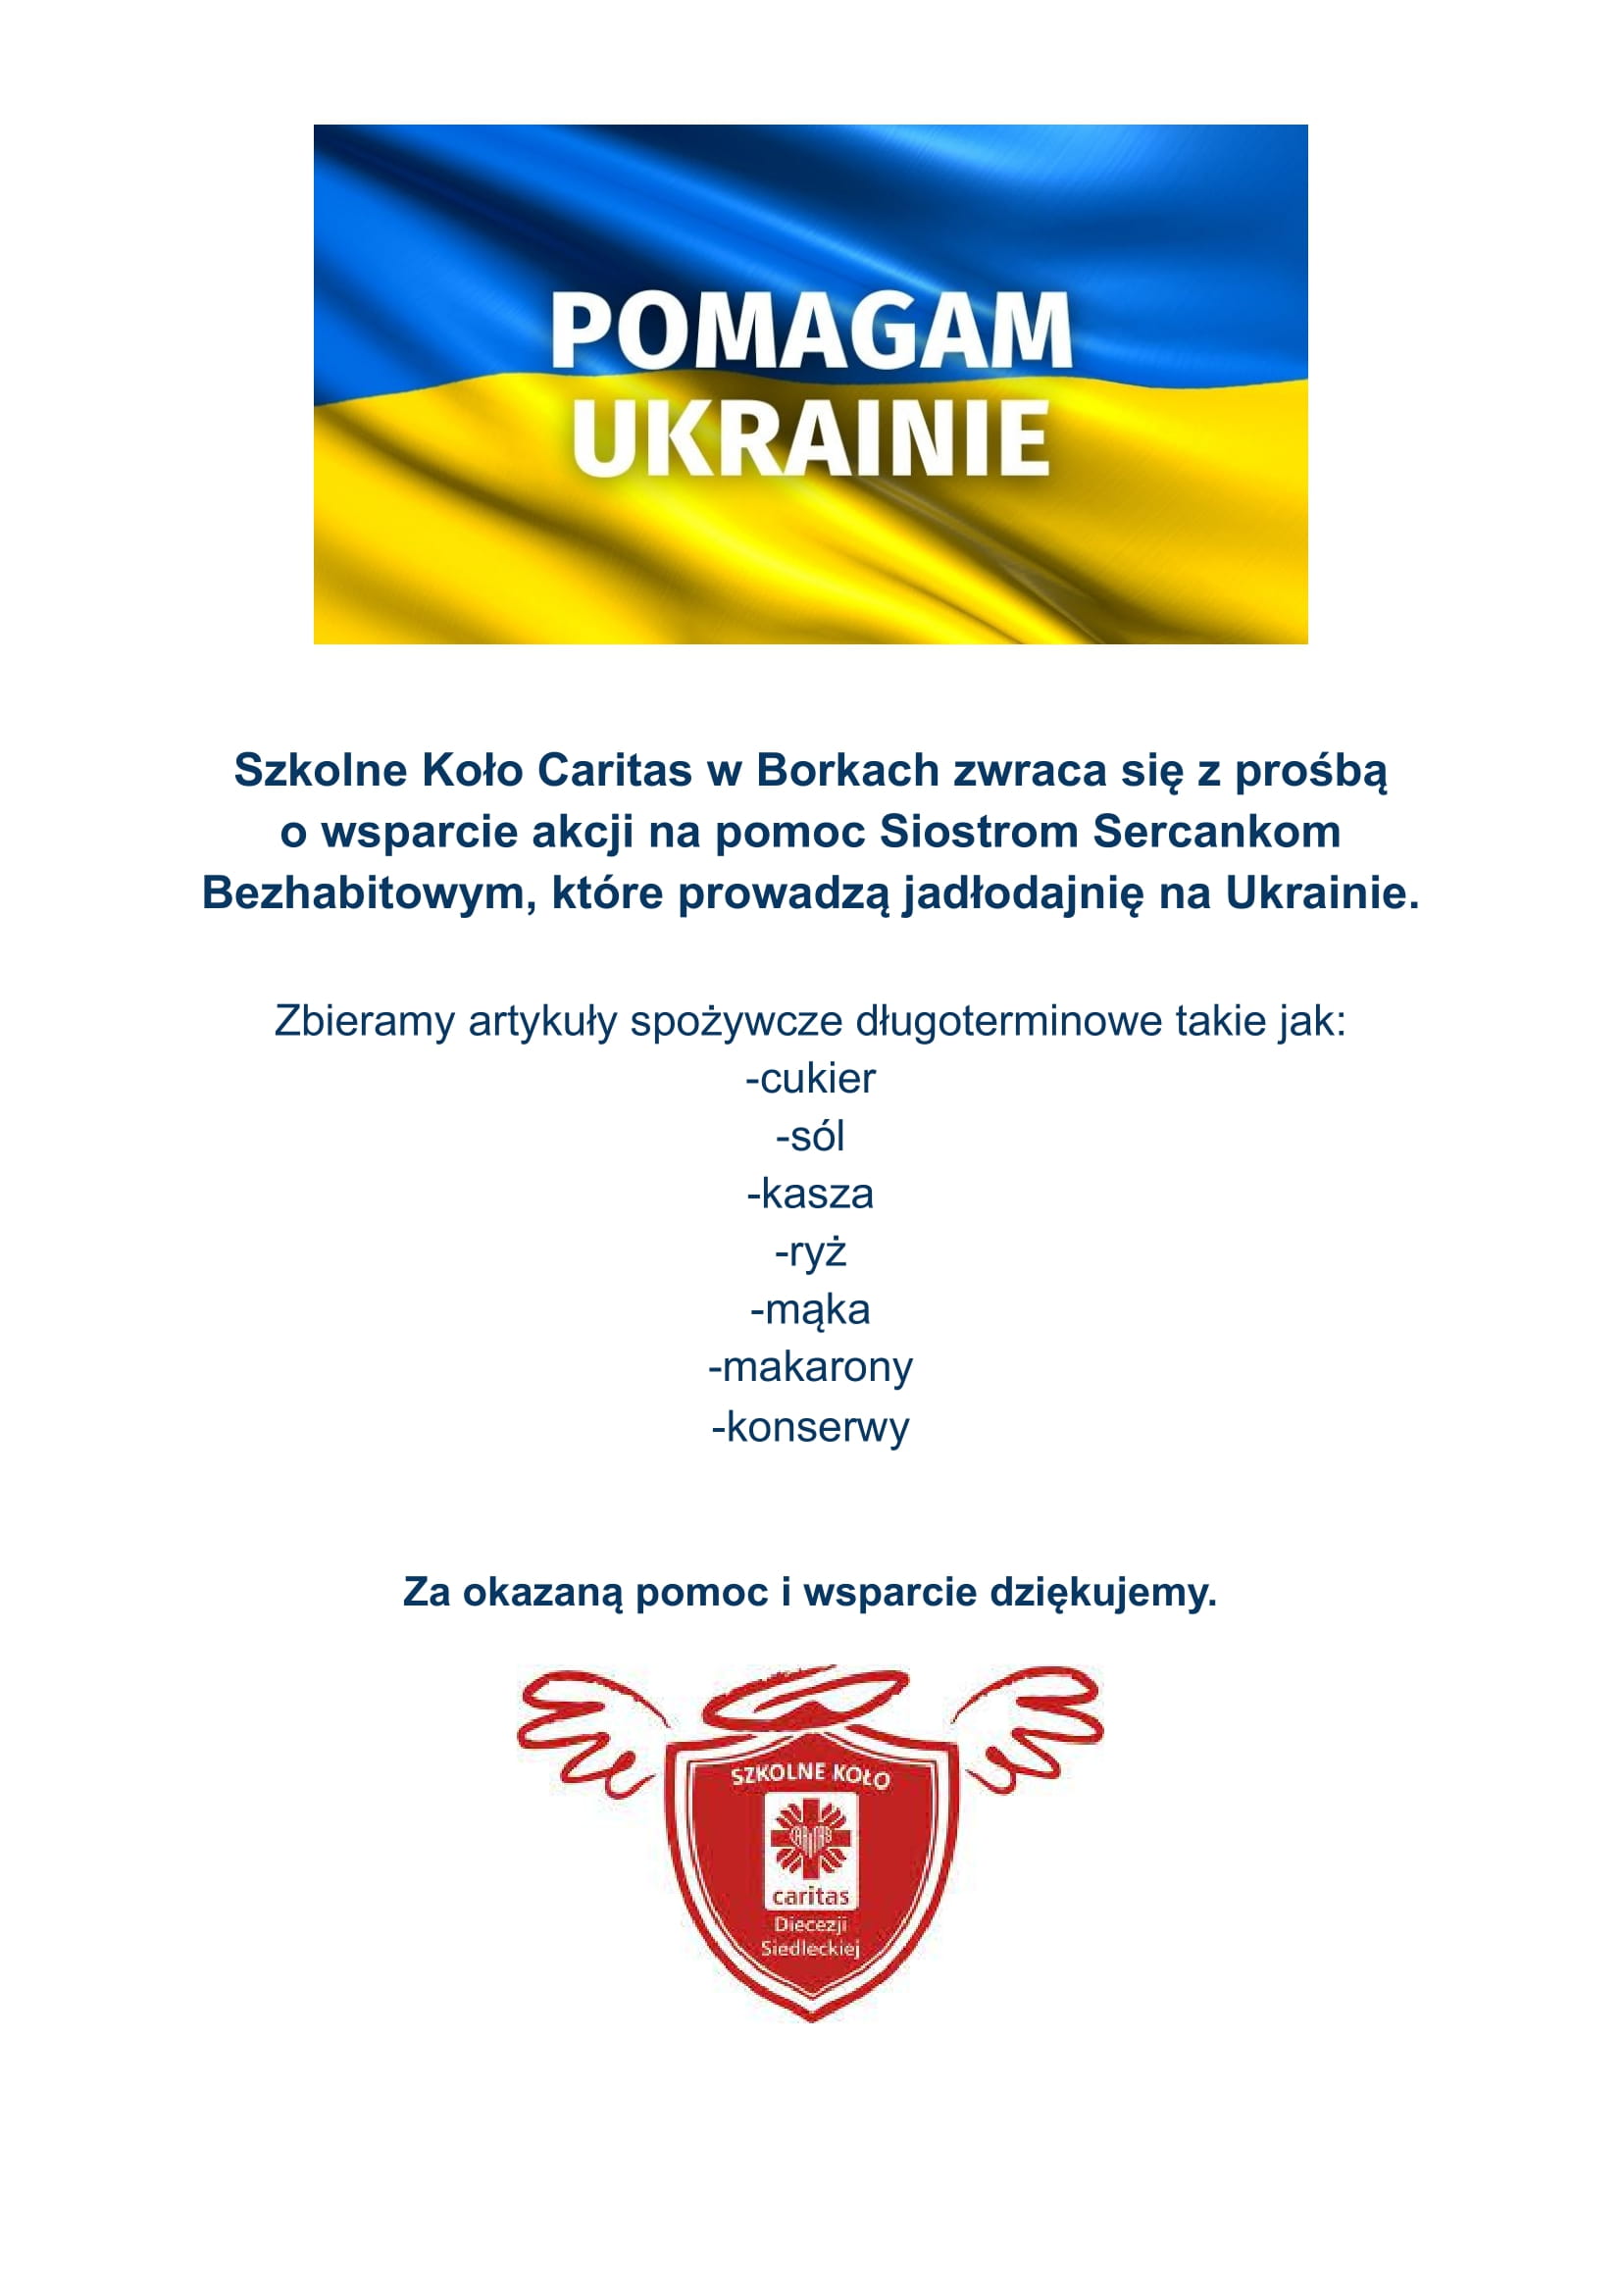 pomagam_ukrainie